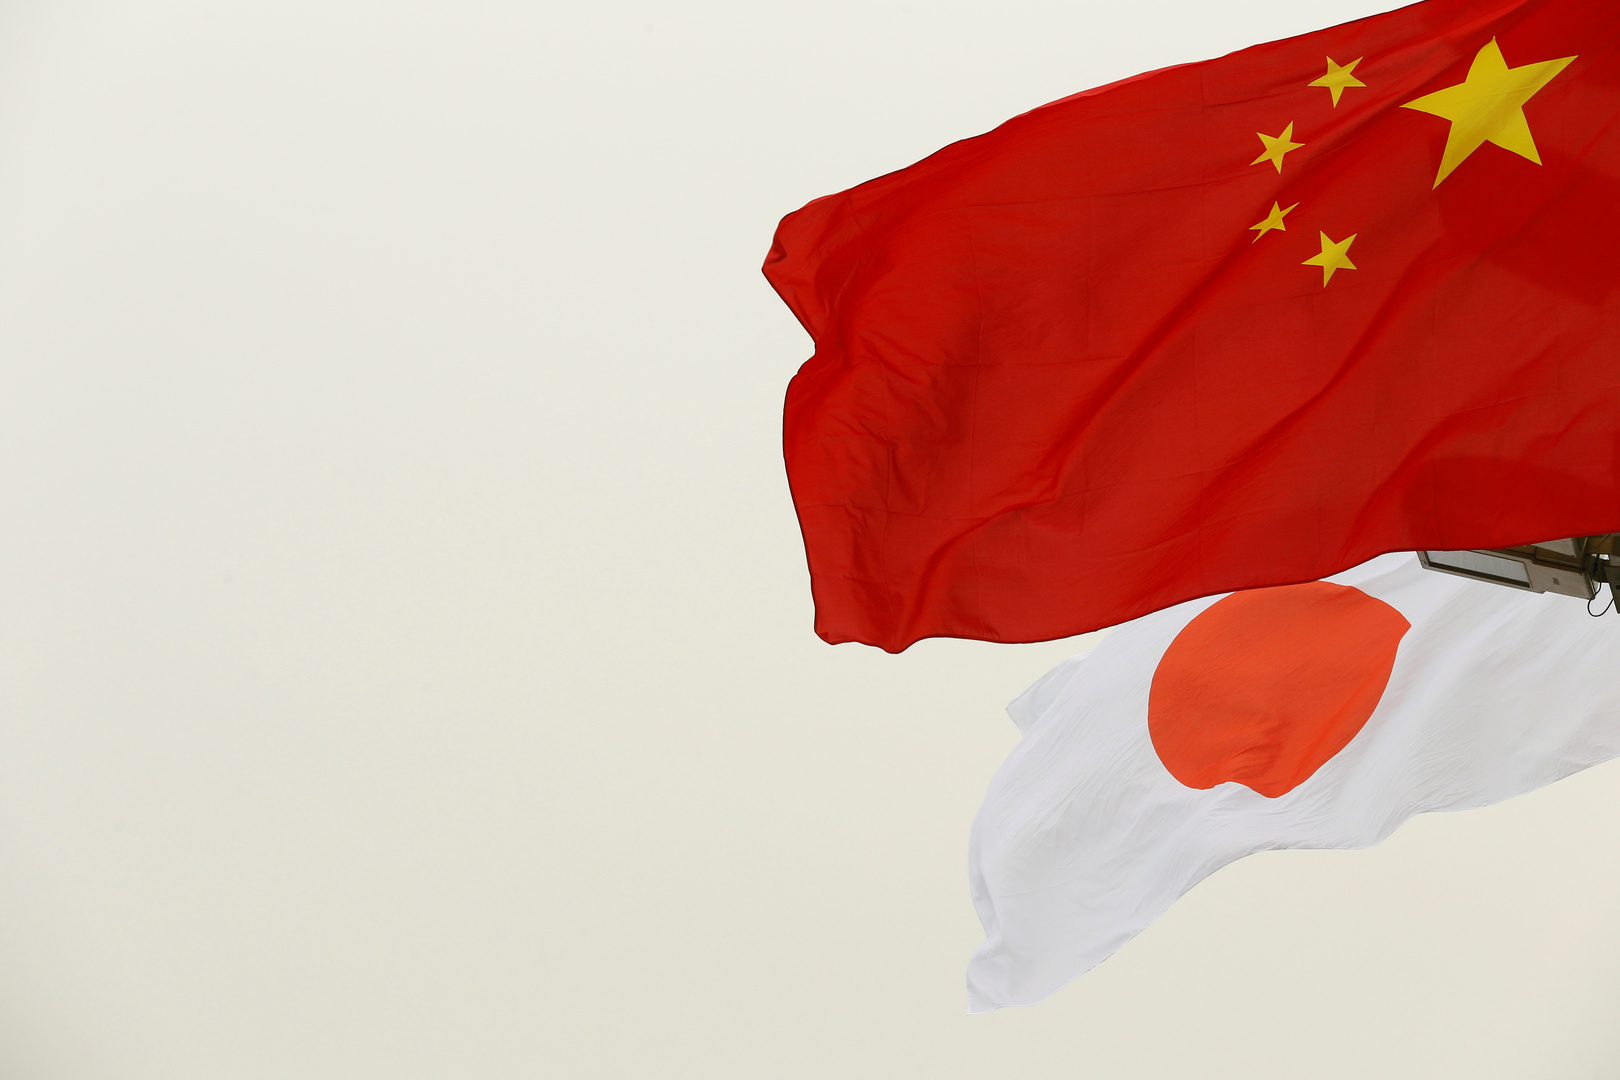 اليابان تبعث رسالة احتجاج إلى الصين 